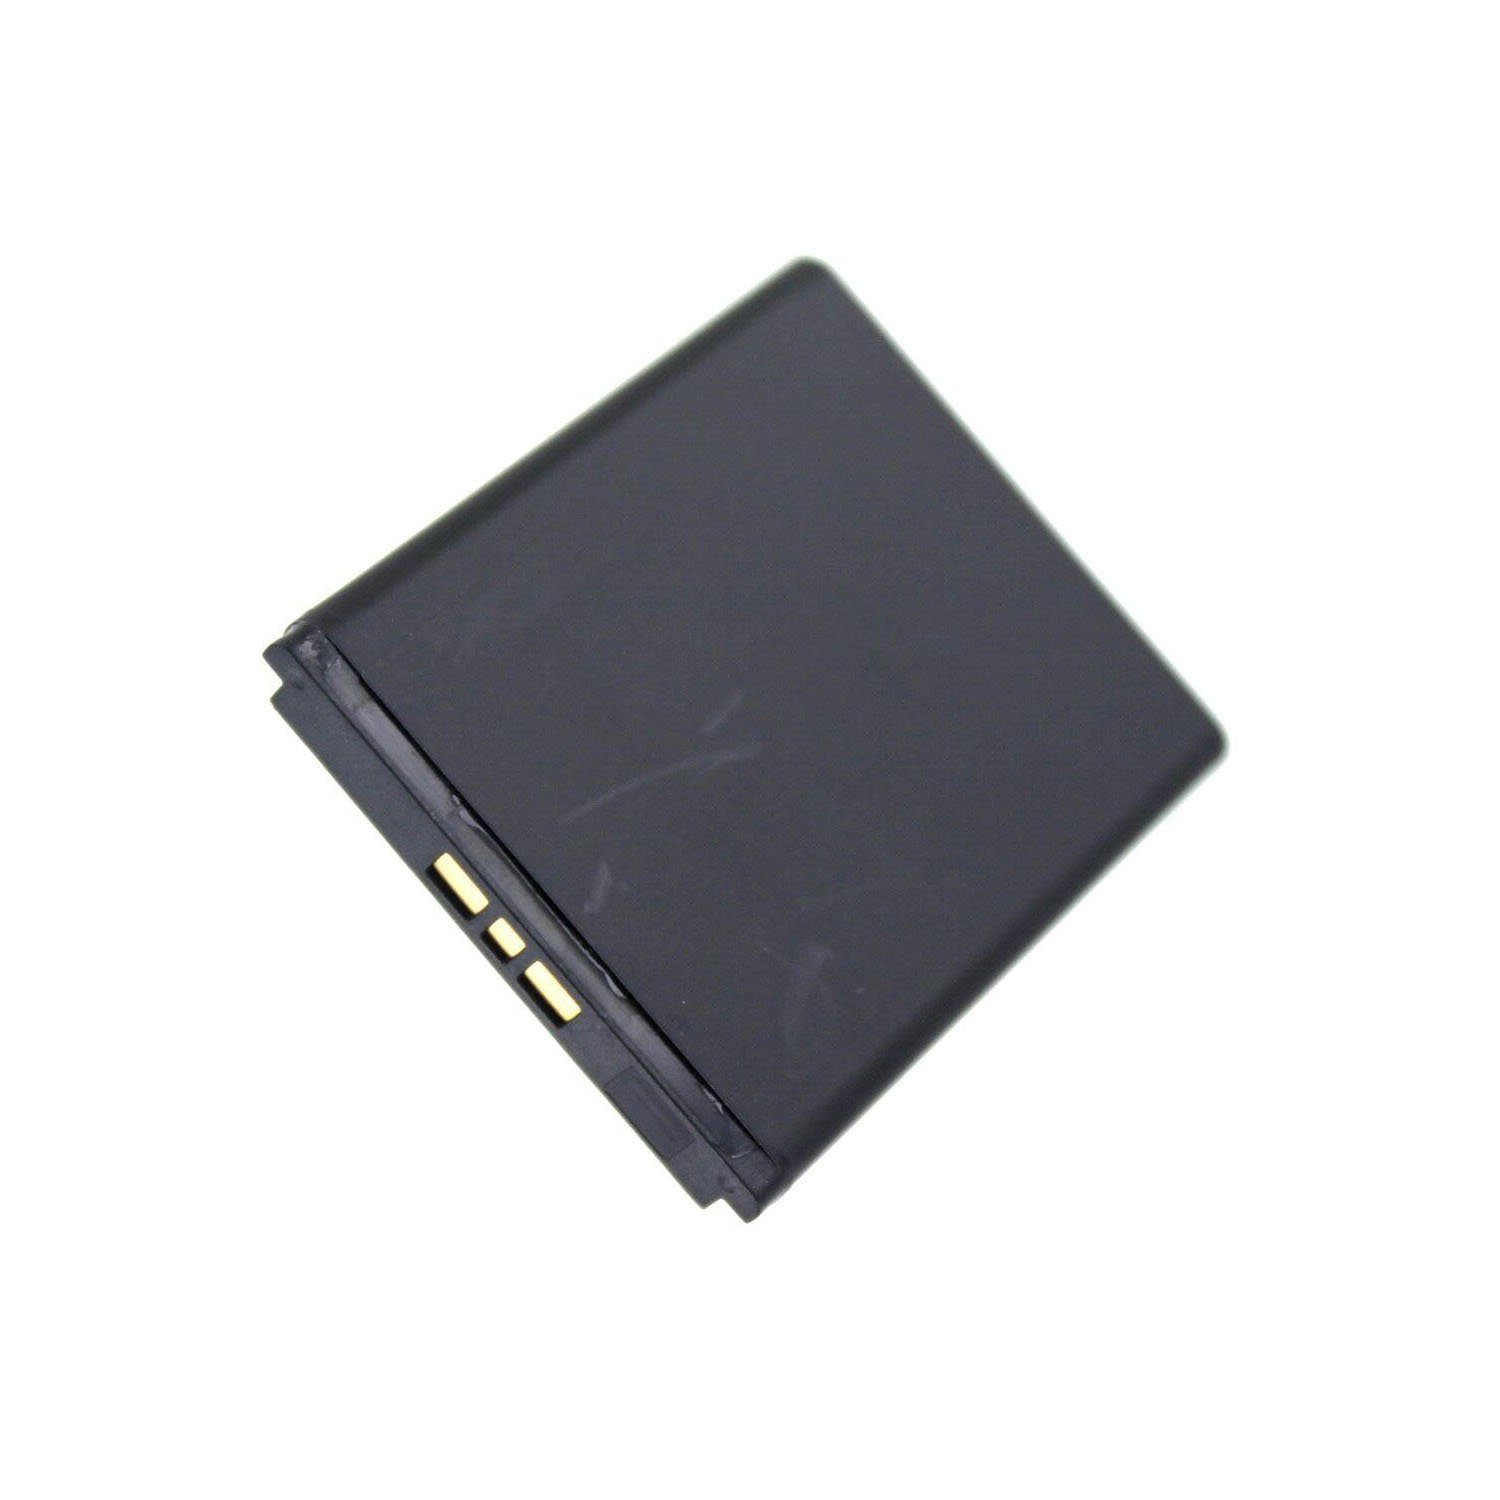 AGI Akku kompatibel mit Sony Ericsson T700 Akku Akku